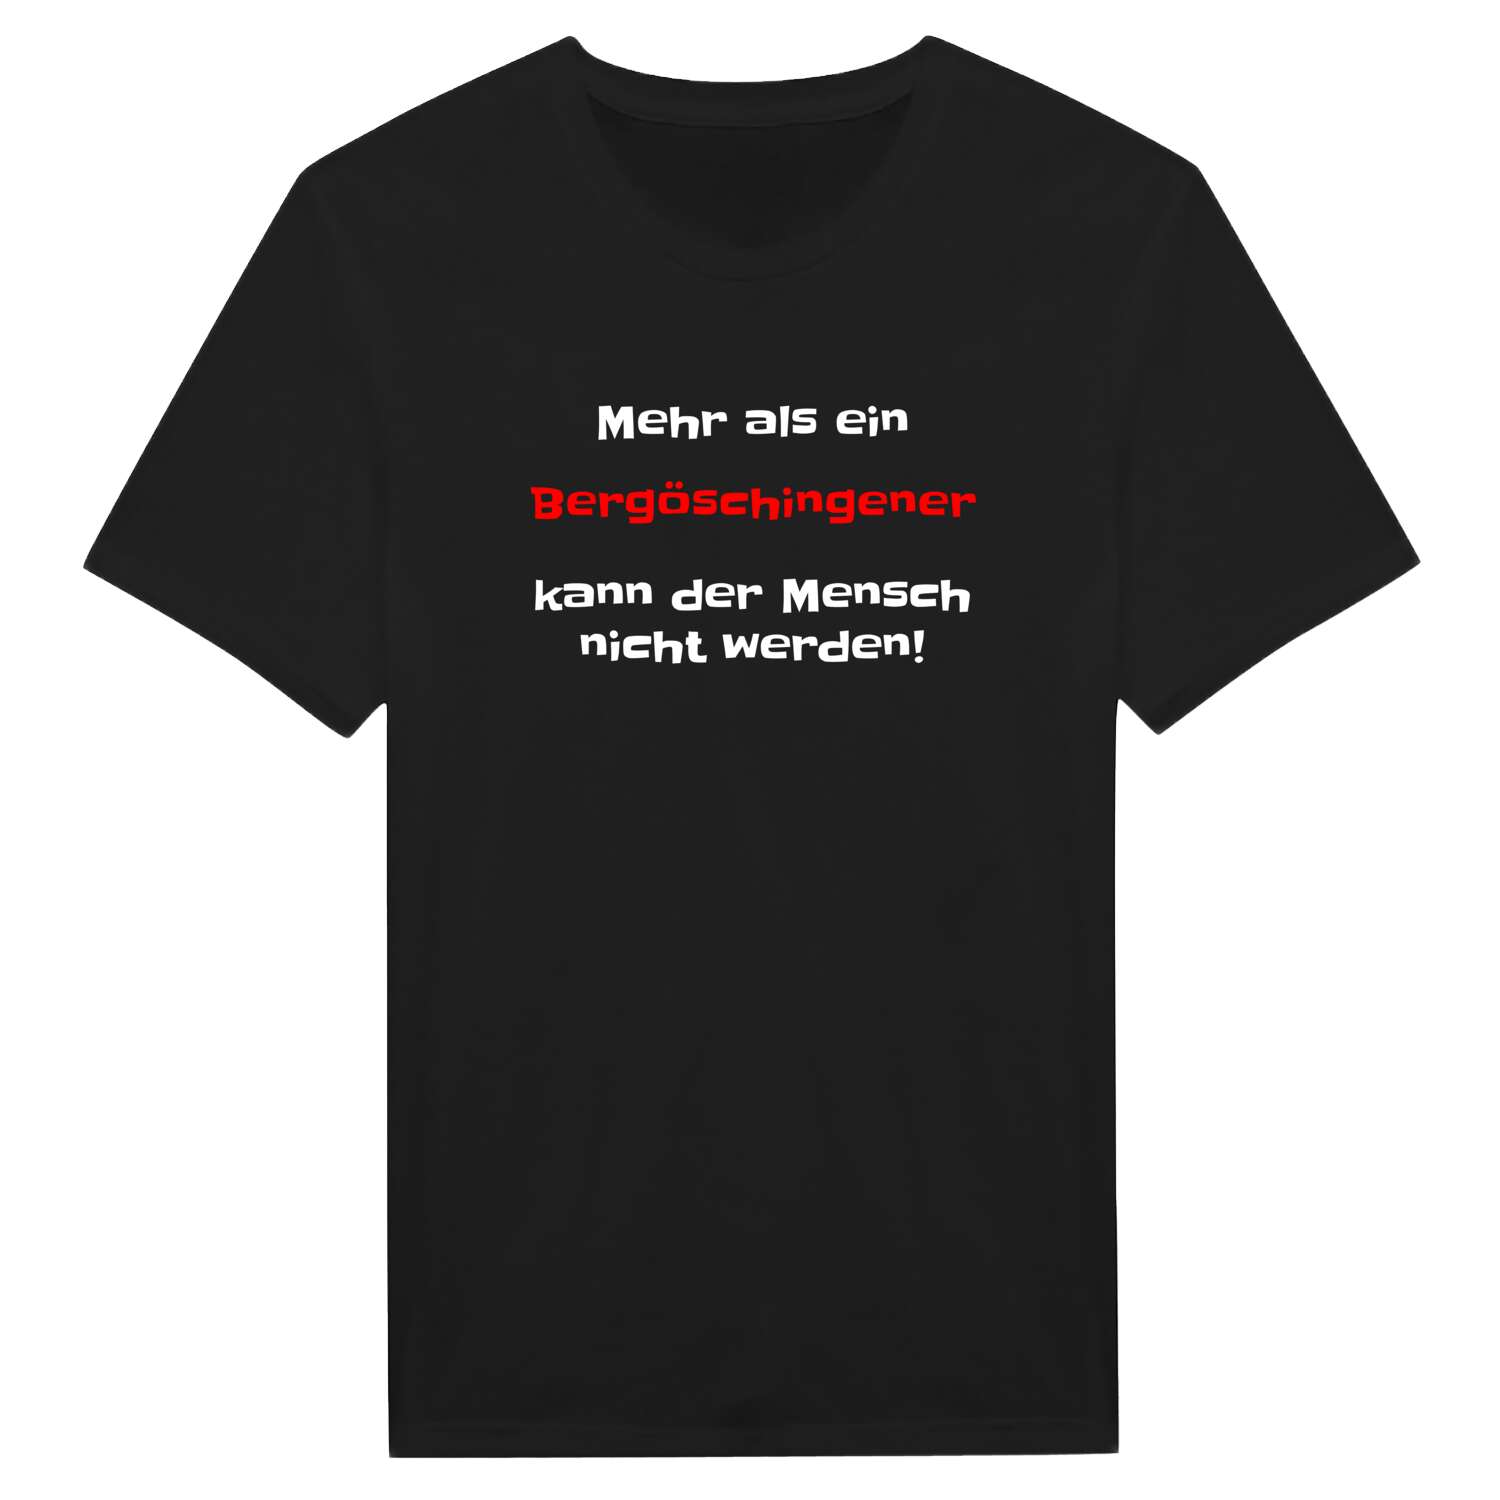 Bergöschingen T-Shirt »Mehr als ein«